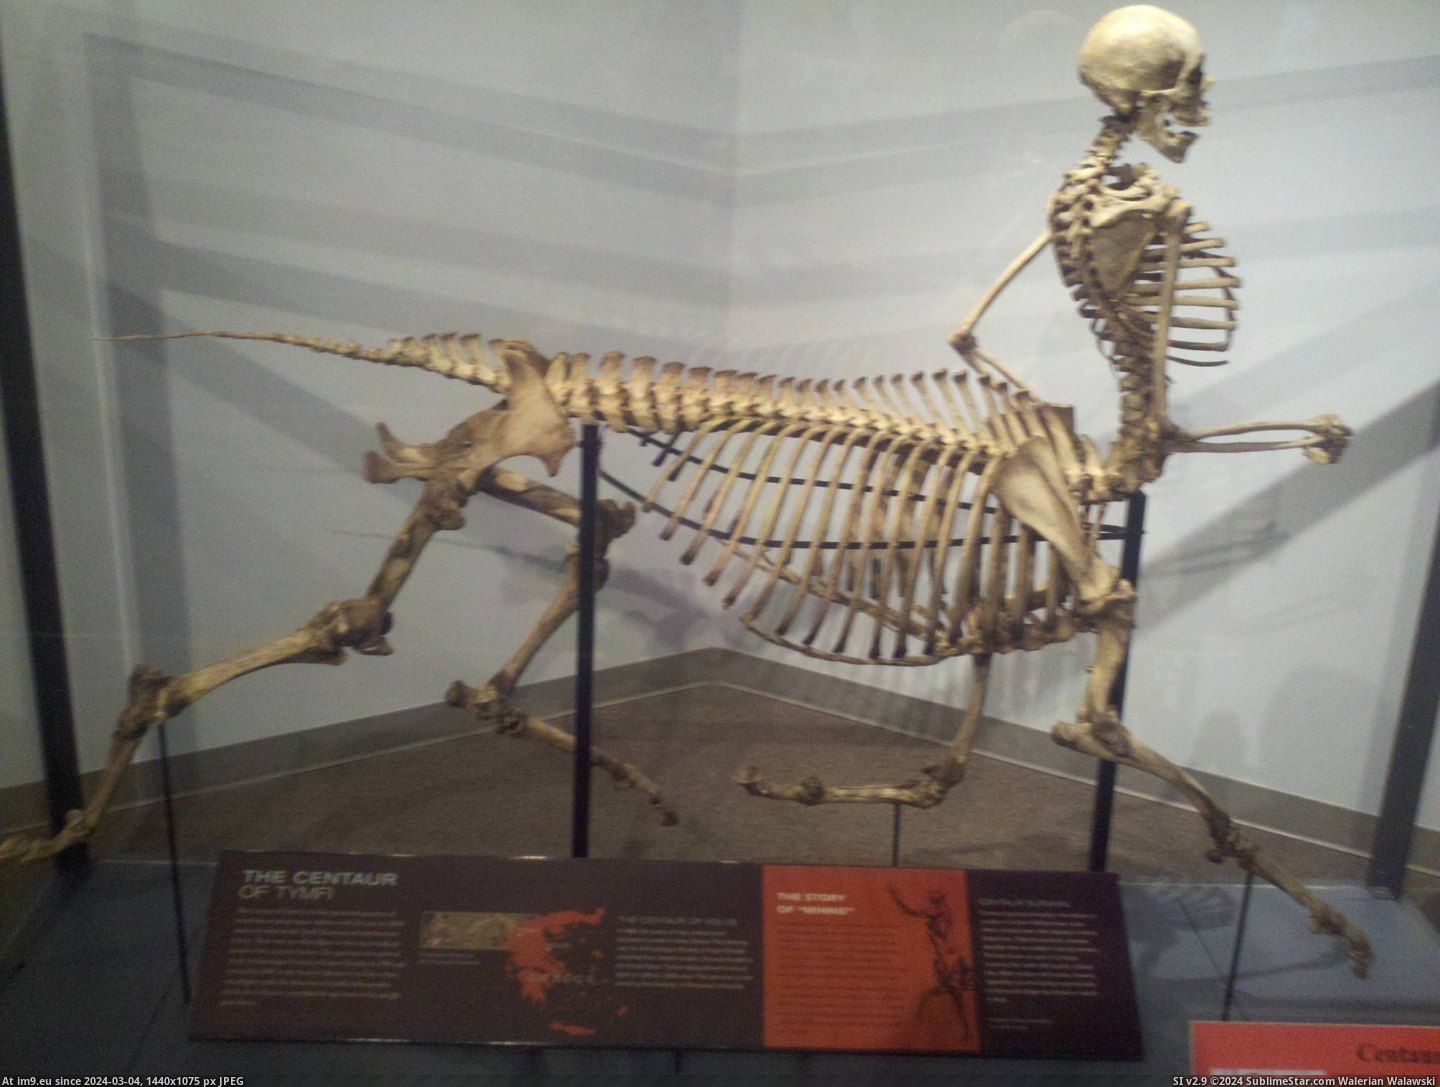 #Life #Museum #Skeleton #Centaur #Local #Wild [Pics] Centaur skeleton at my local wild life museum. Pic. (Изображение из альбом My r/PICS favs))